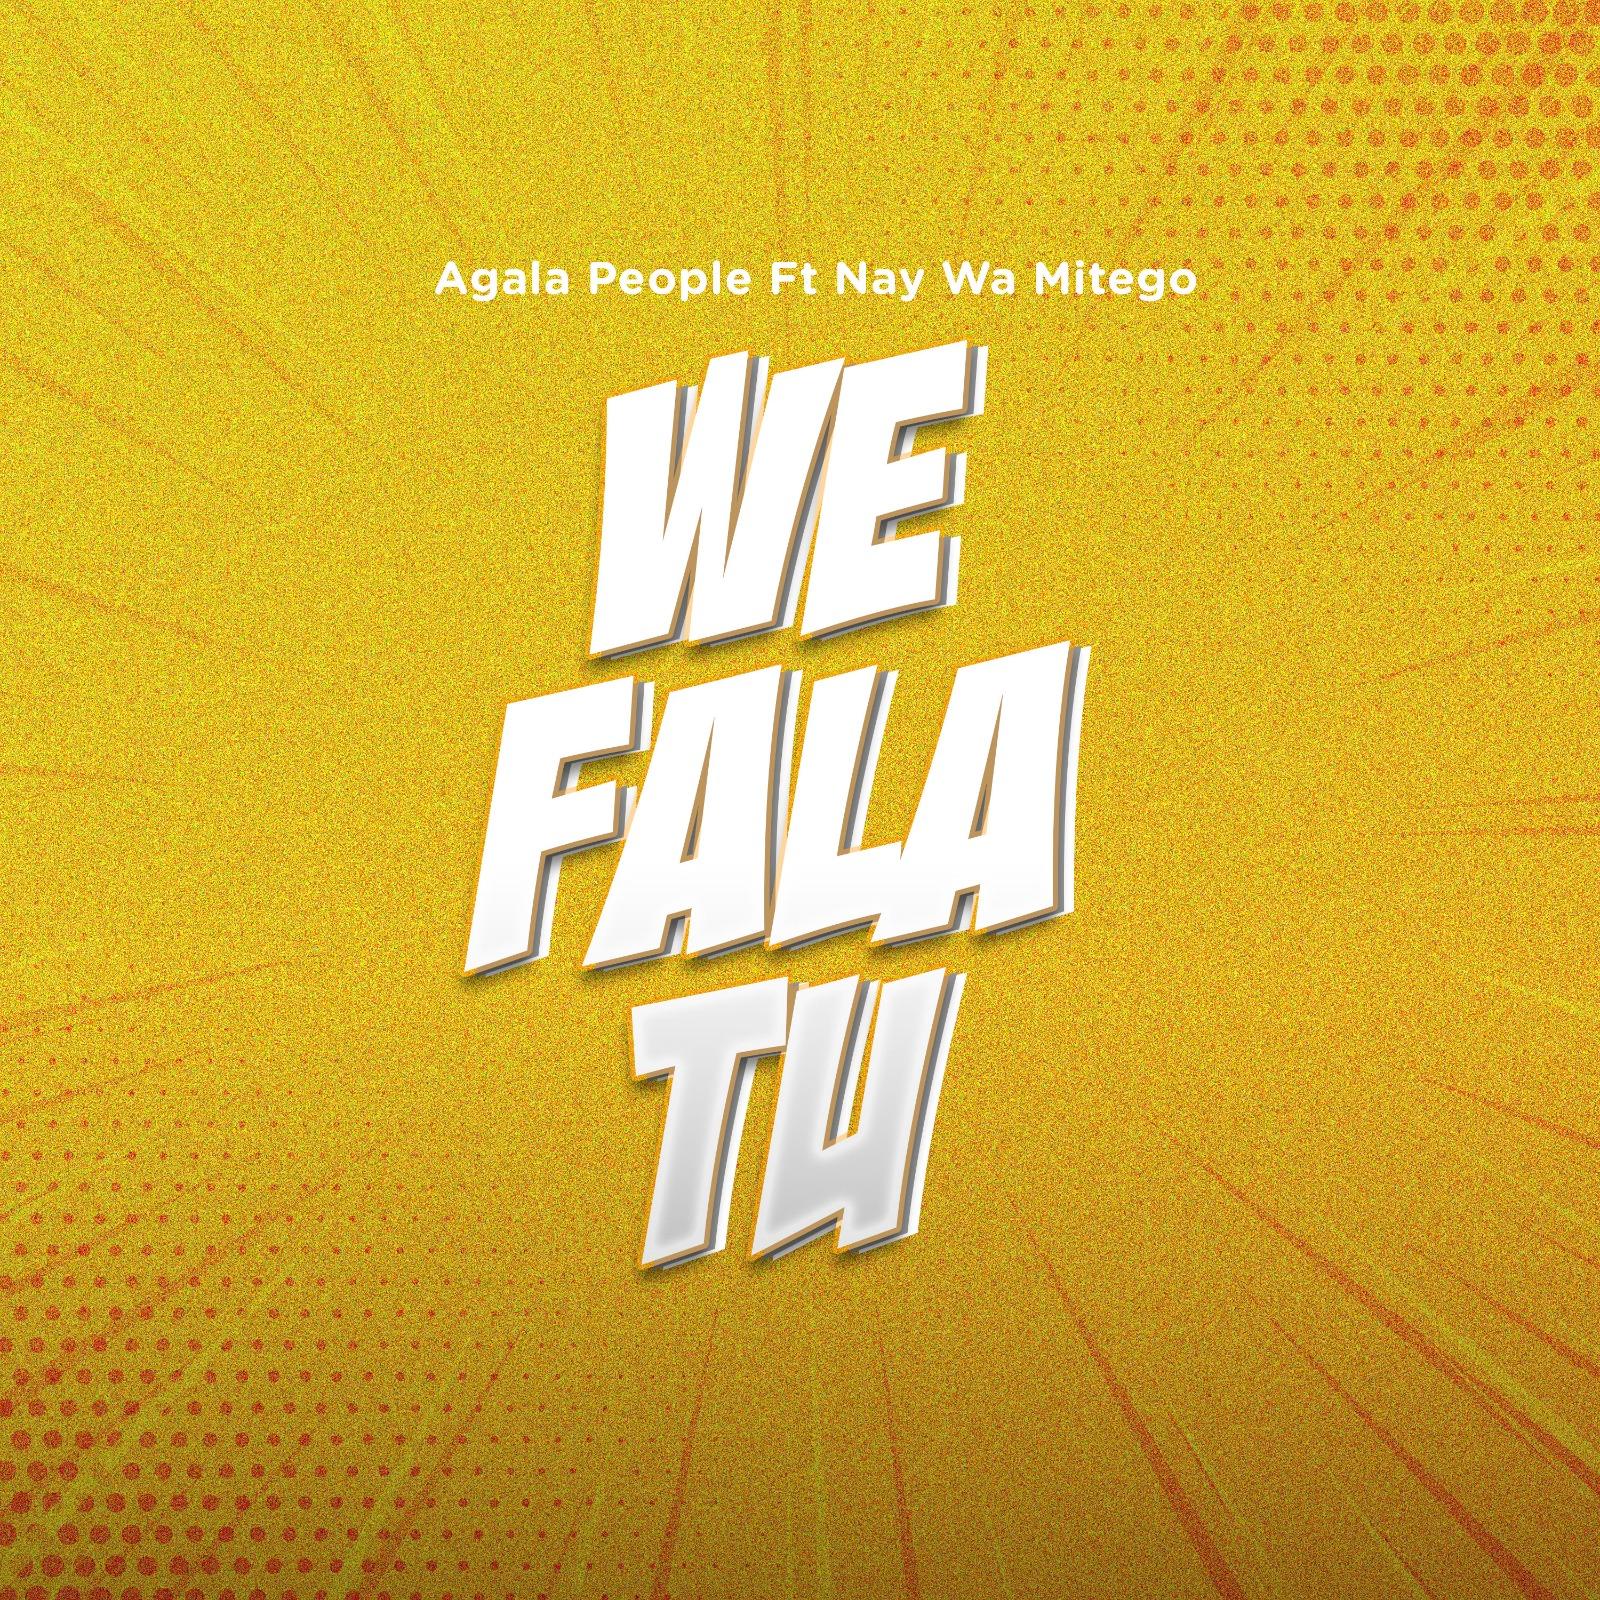 We Fala Tu By Agala People Ft. Nay Wa Mitego